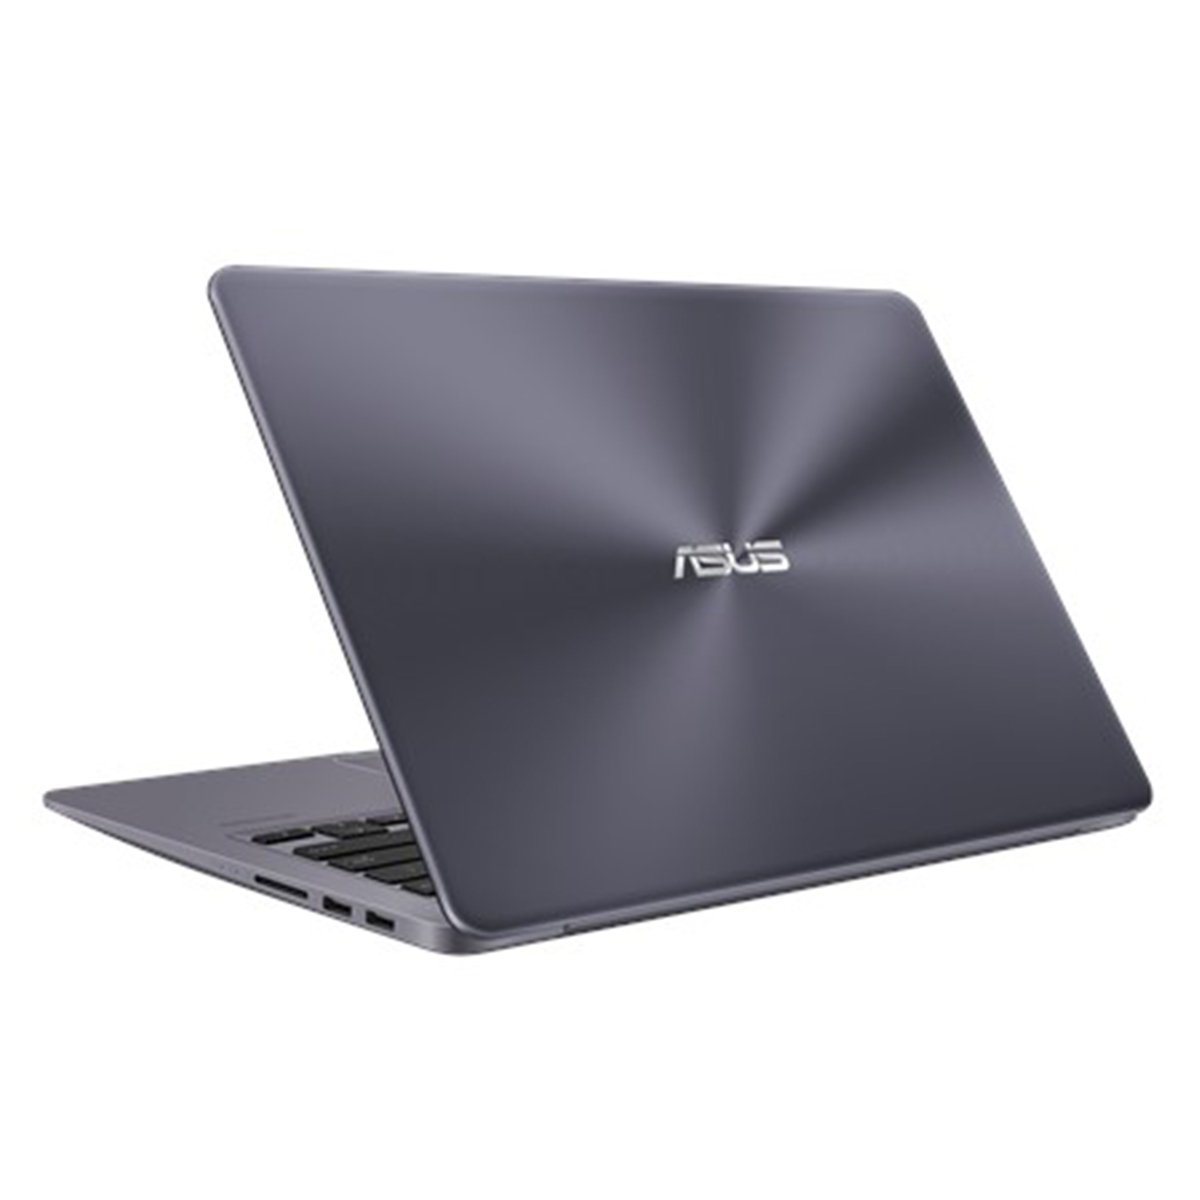 Asus VivoBook X411UF-EB309T Core i7 Grey